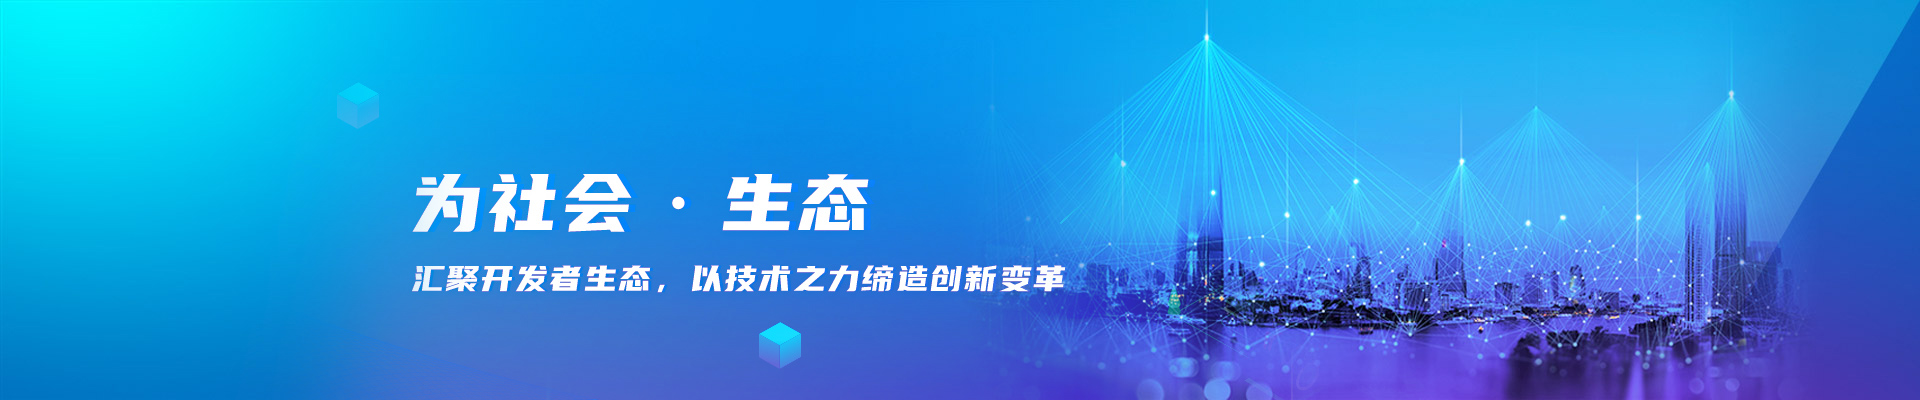 bwin·必赢(中国)唯一官方网站_产品9601